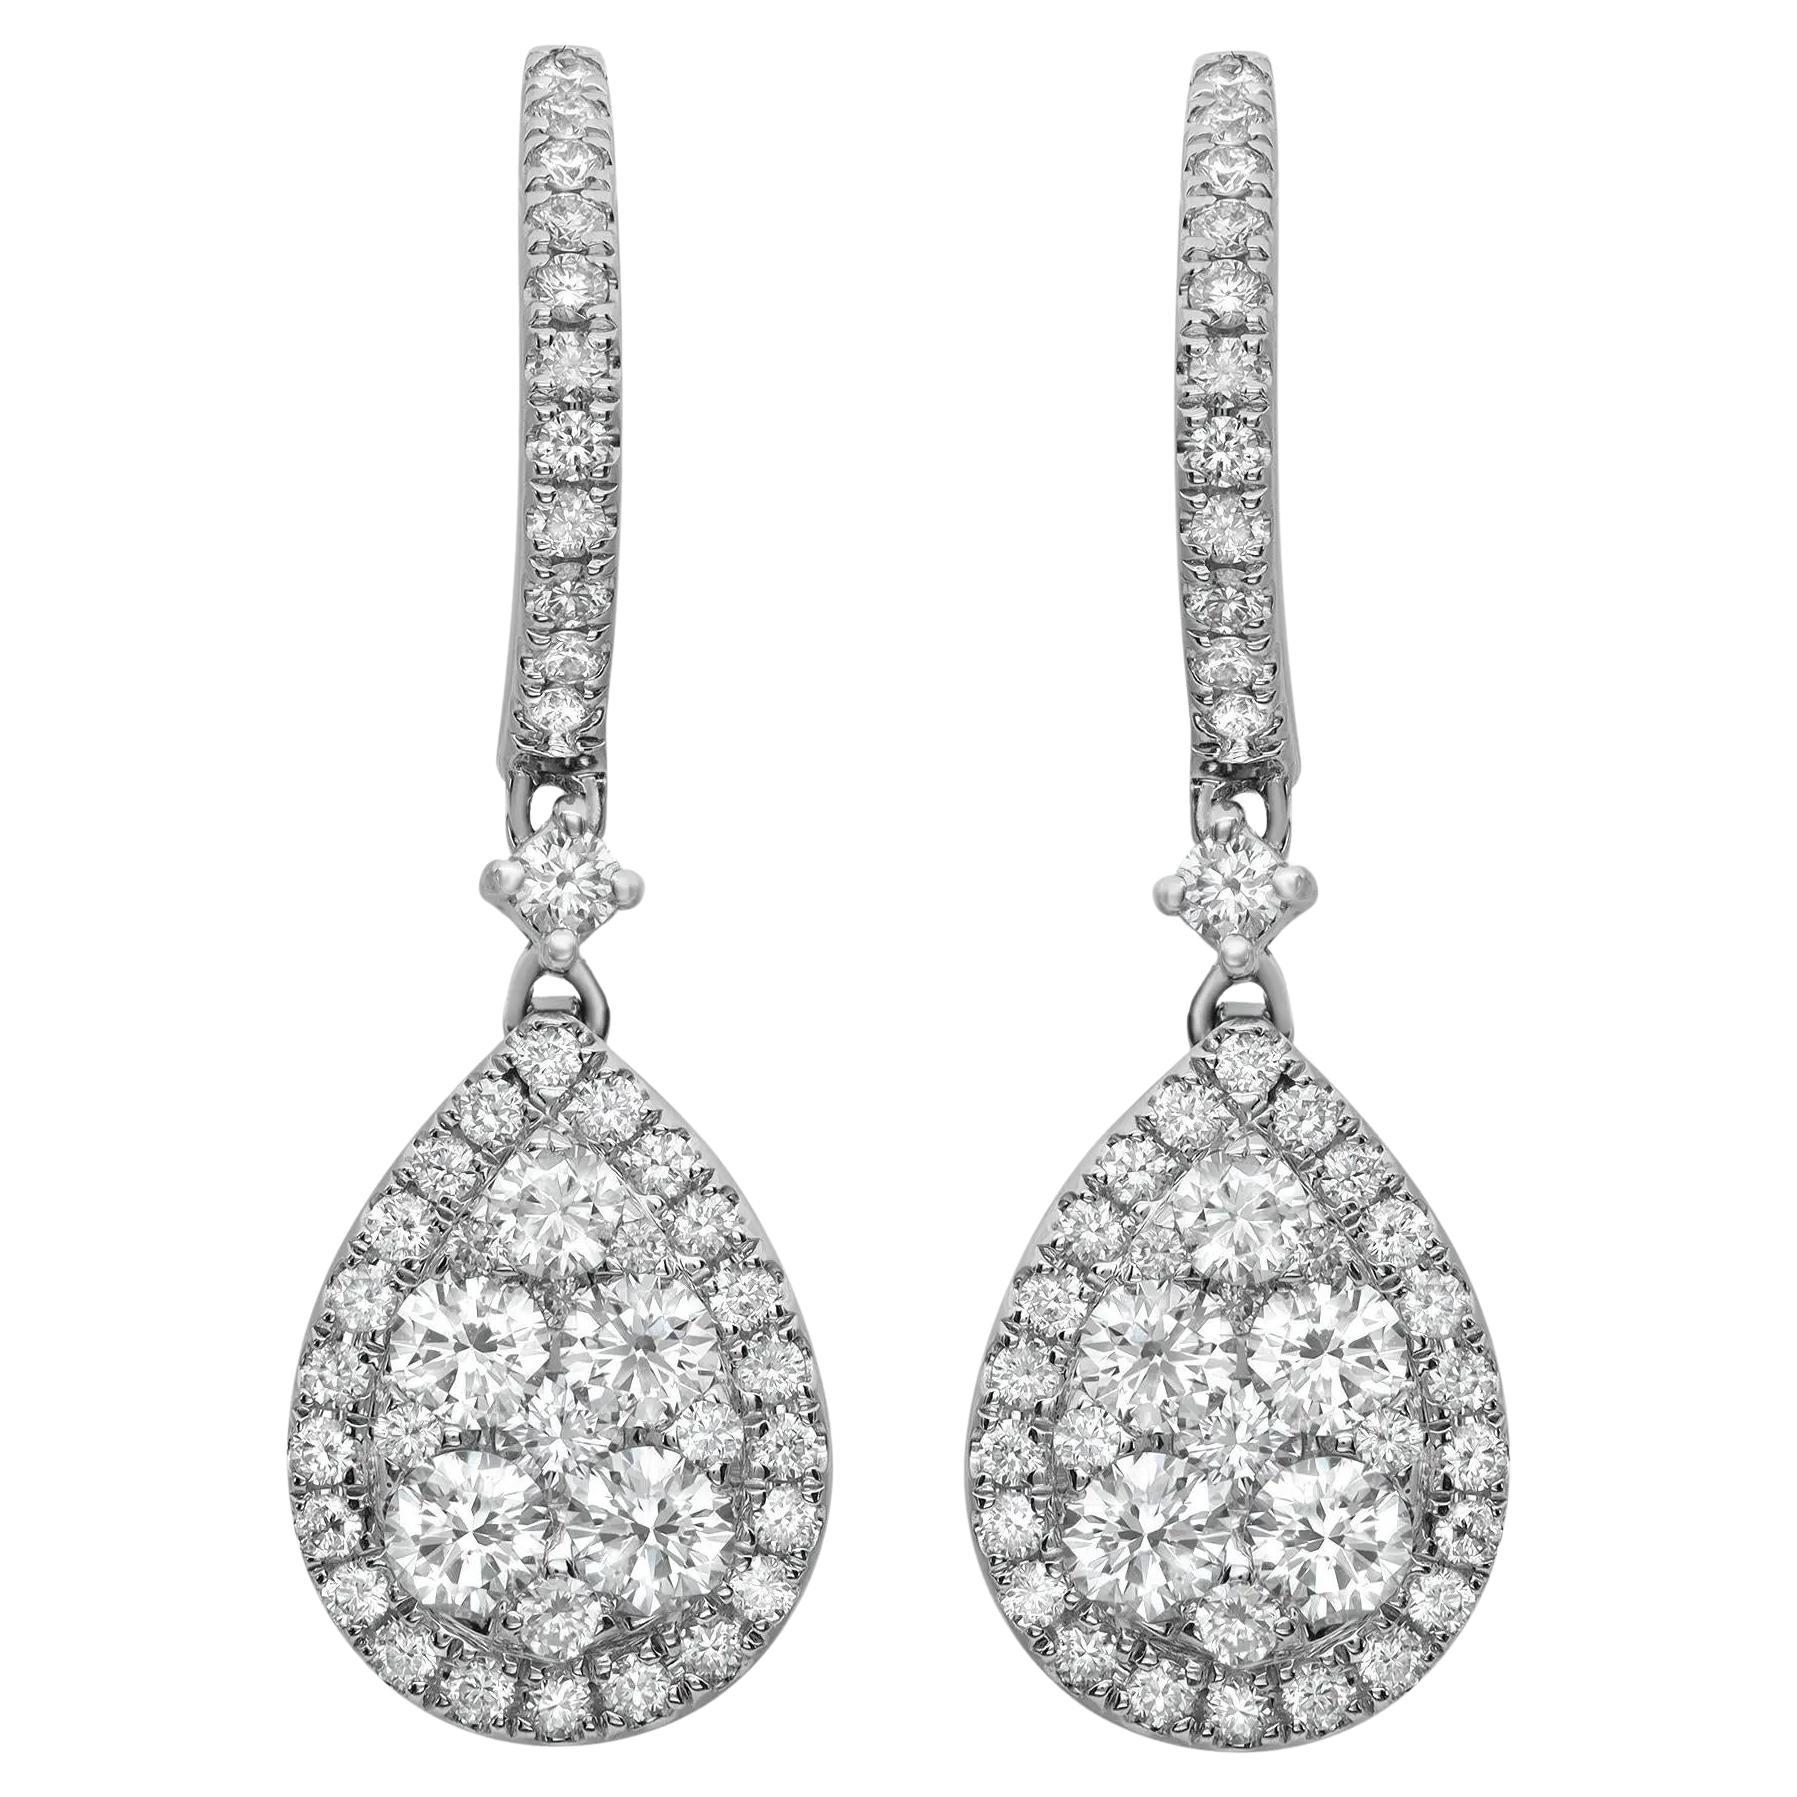 Round Cut Diamond Tear Drop Earrings 18K White Gold 1.65Cttw 